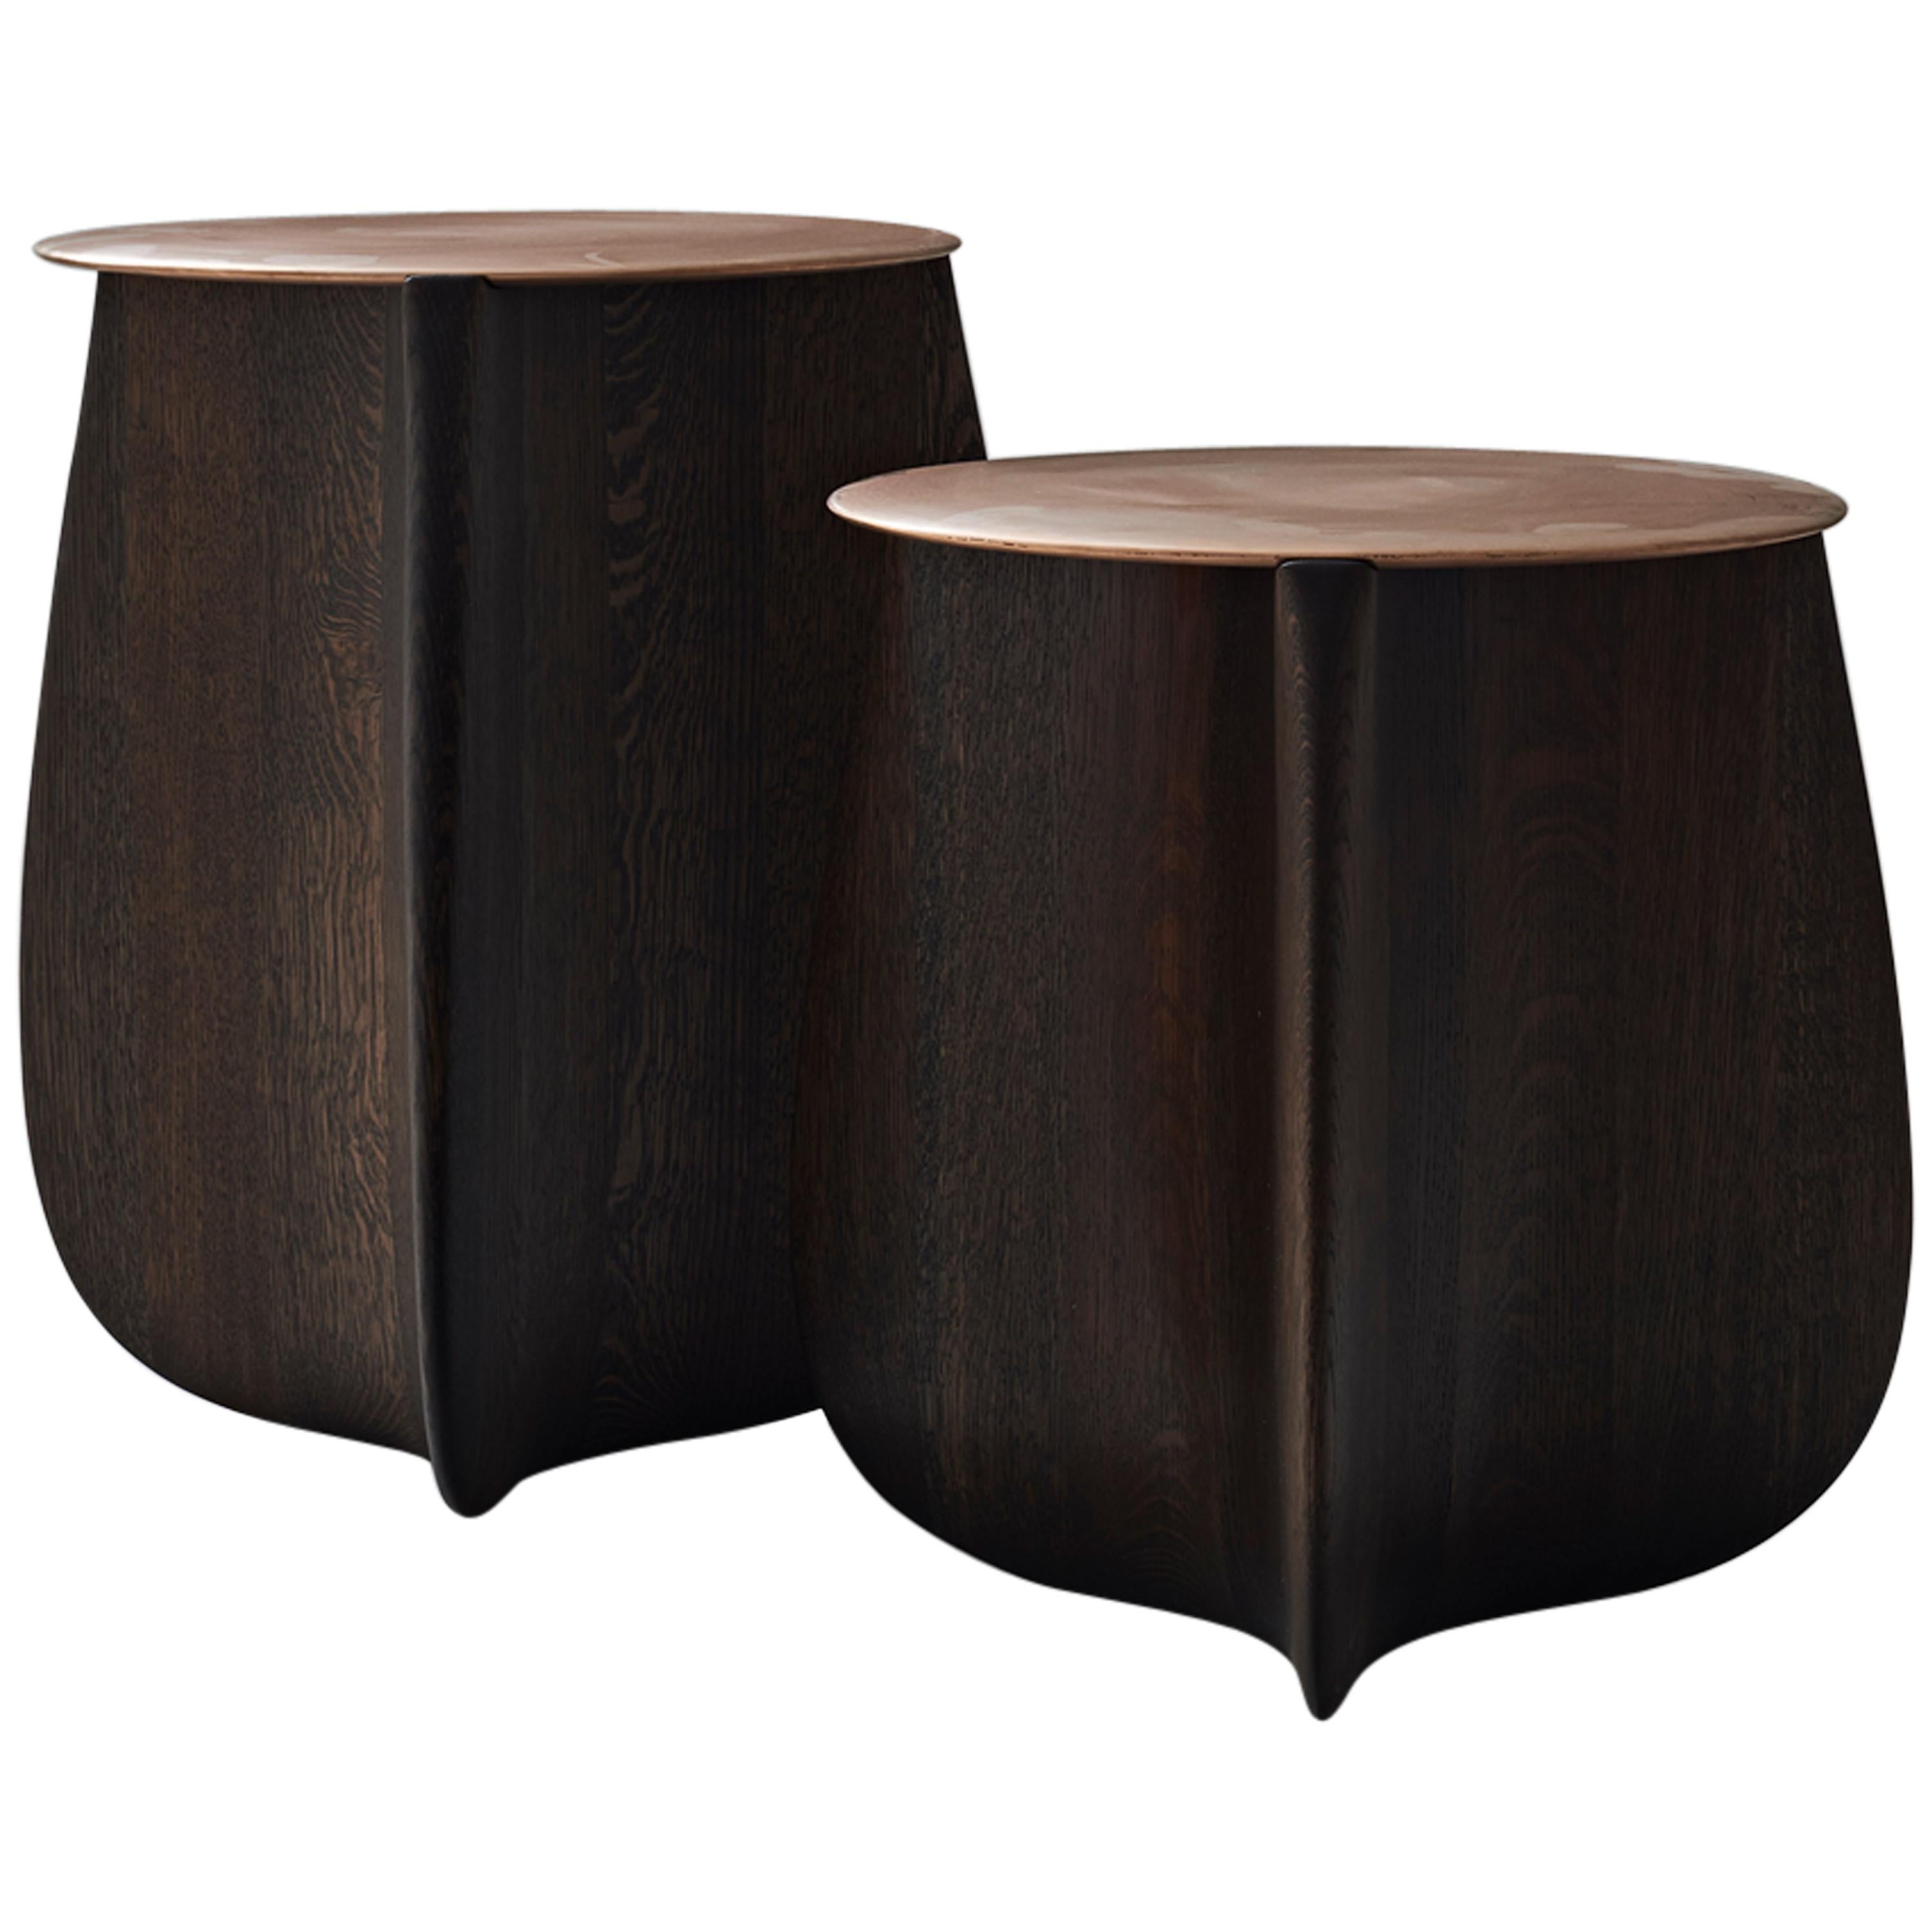 Set of 2 Sine Solid Hardwood Side Tables by Izm Design